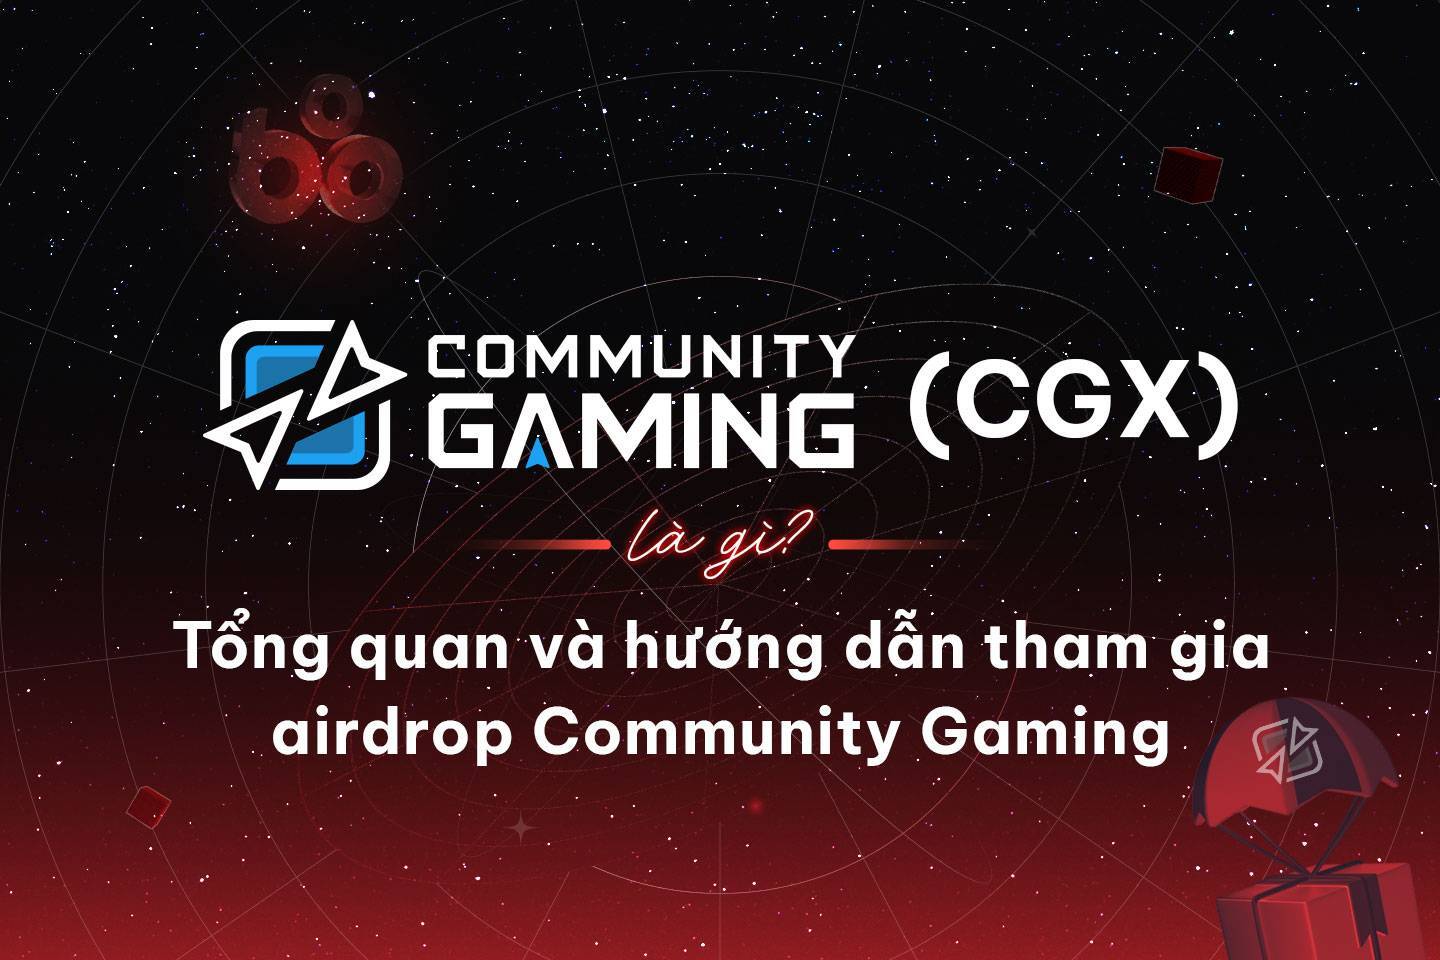 Community Gaming cgx Là Gì Tổng Quan Và Hướng Dẫn Tham Gia Airdrop Community Gaming